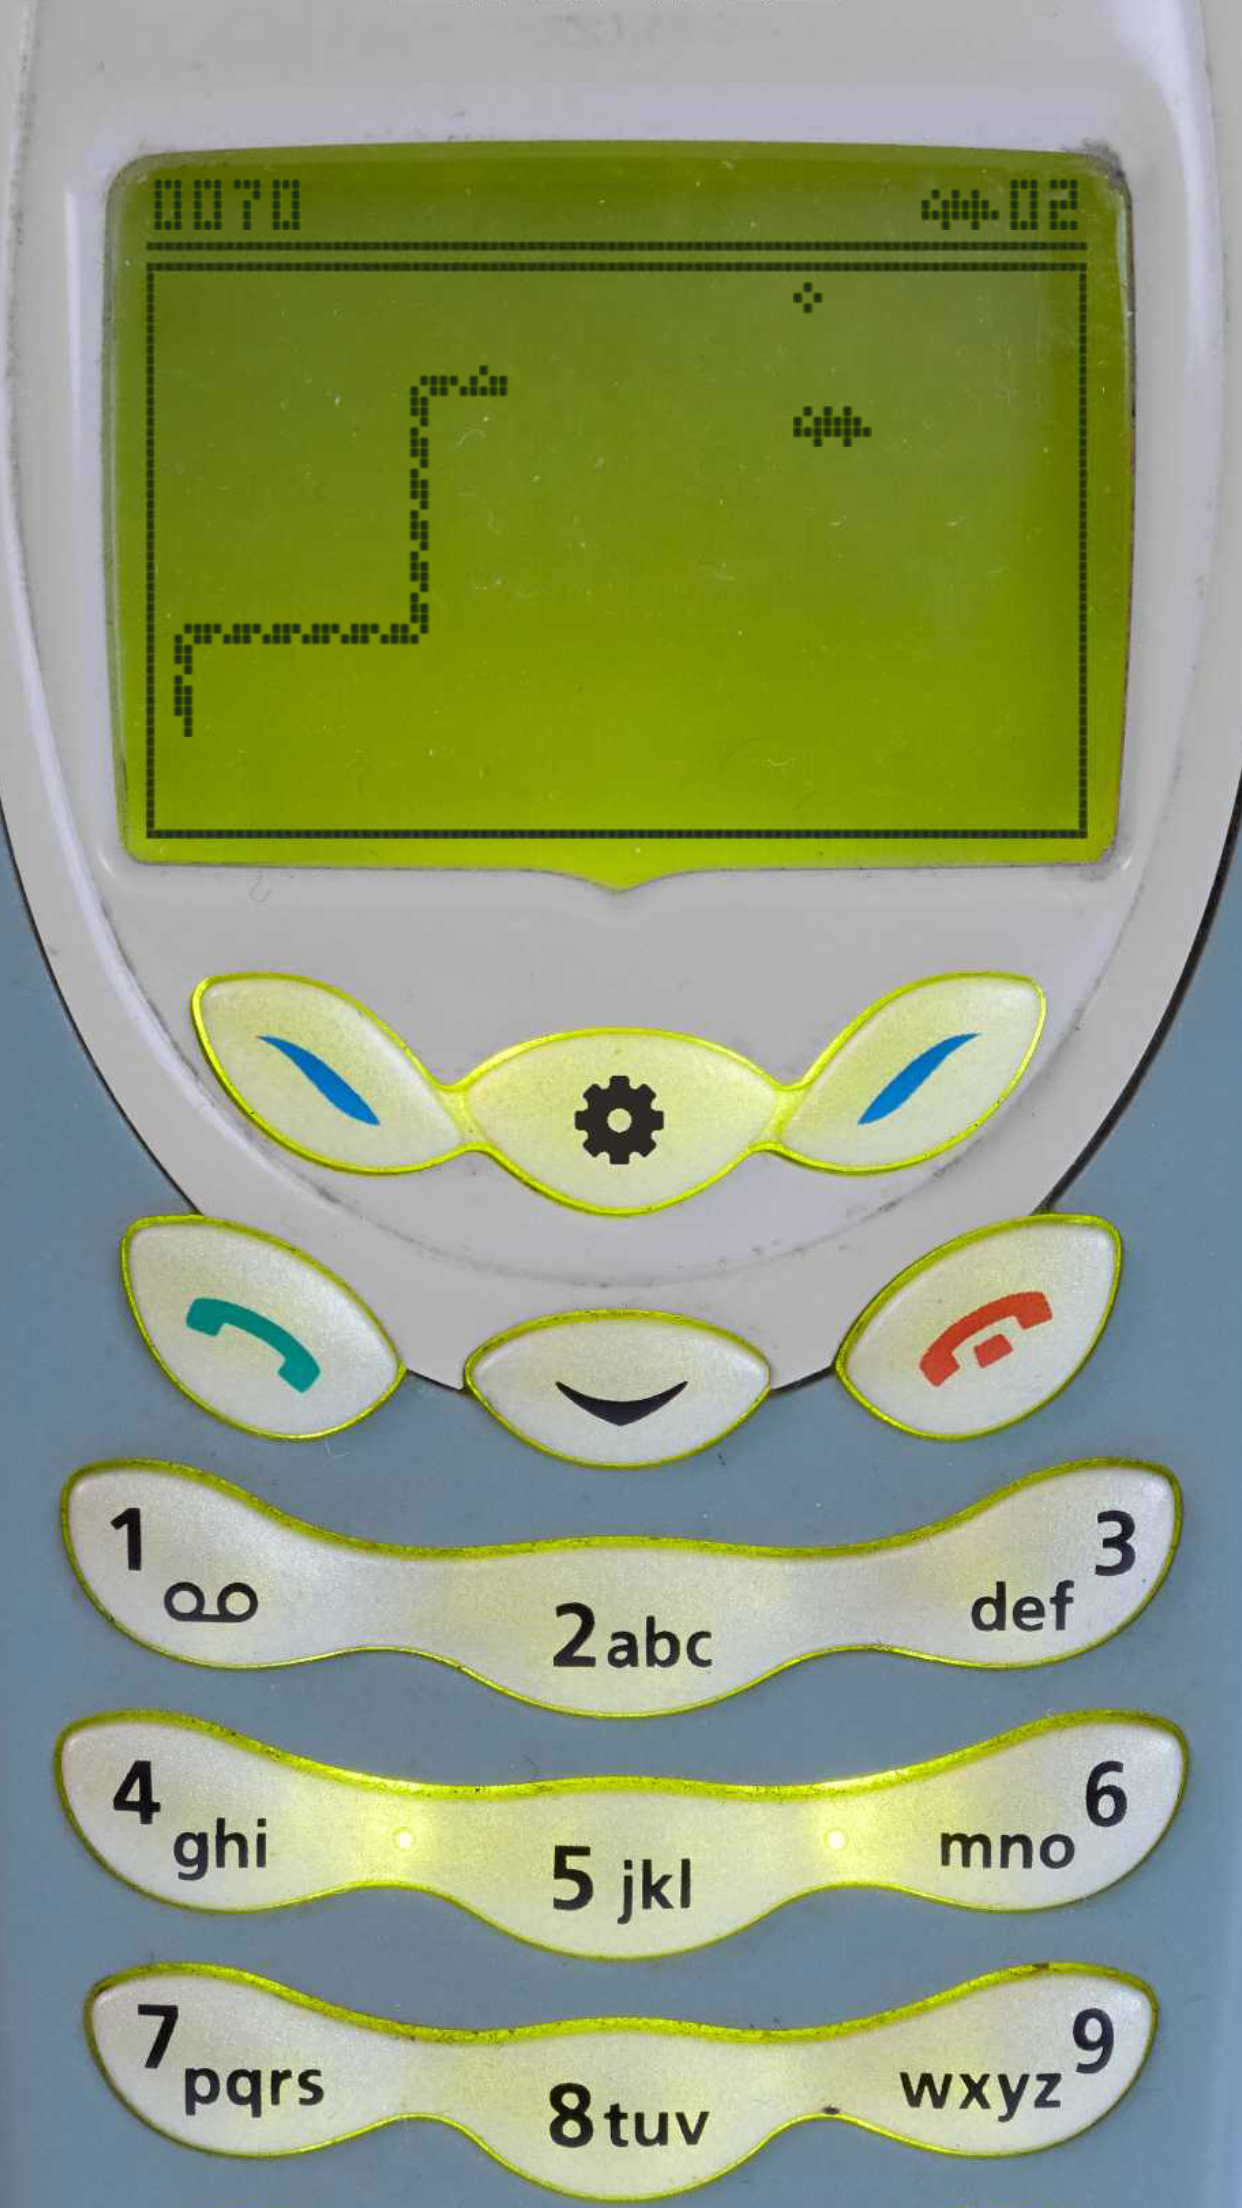 스네이크 '97: 복고풍 전화기 클래식 게임 스크린 샷